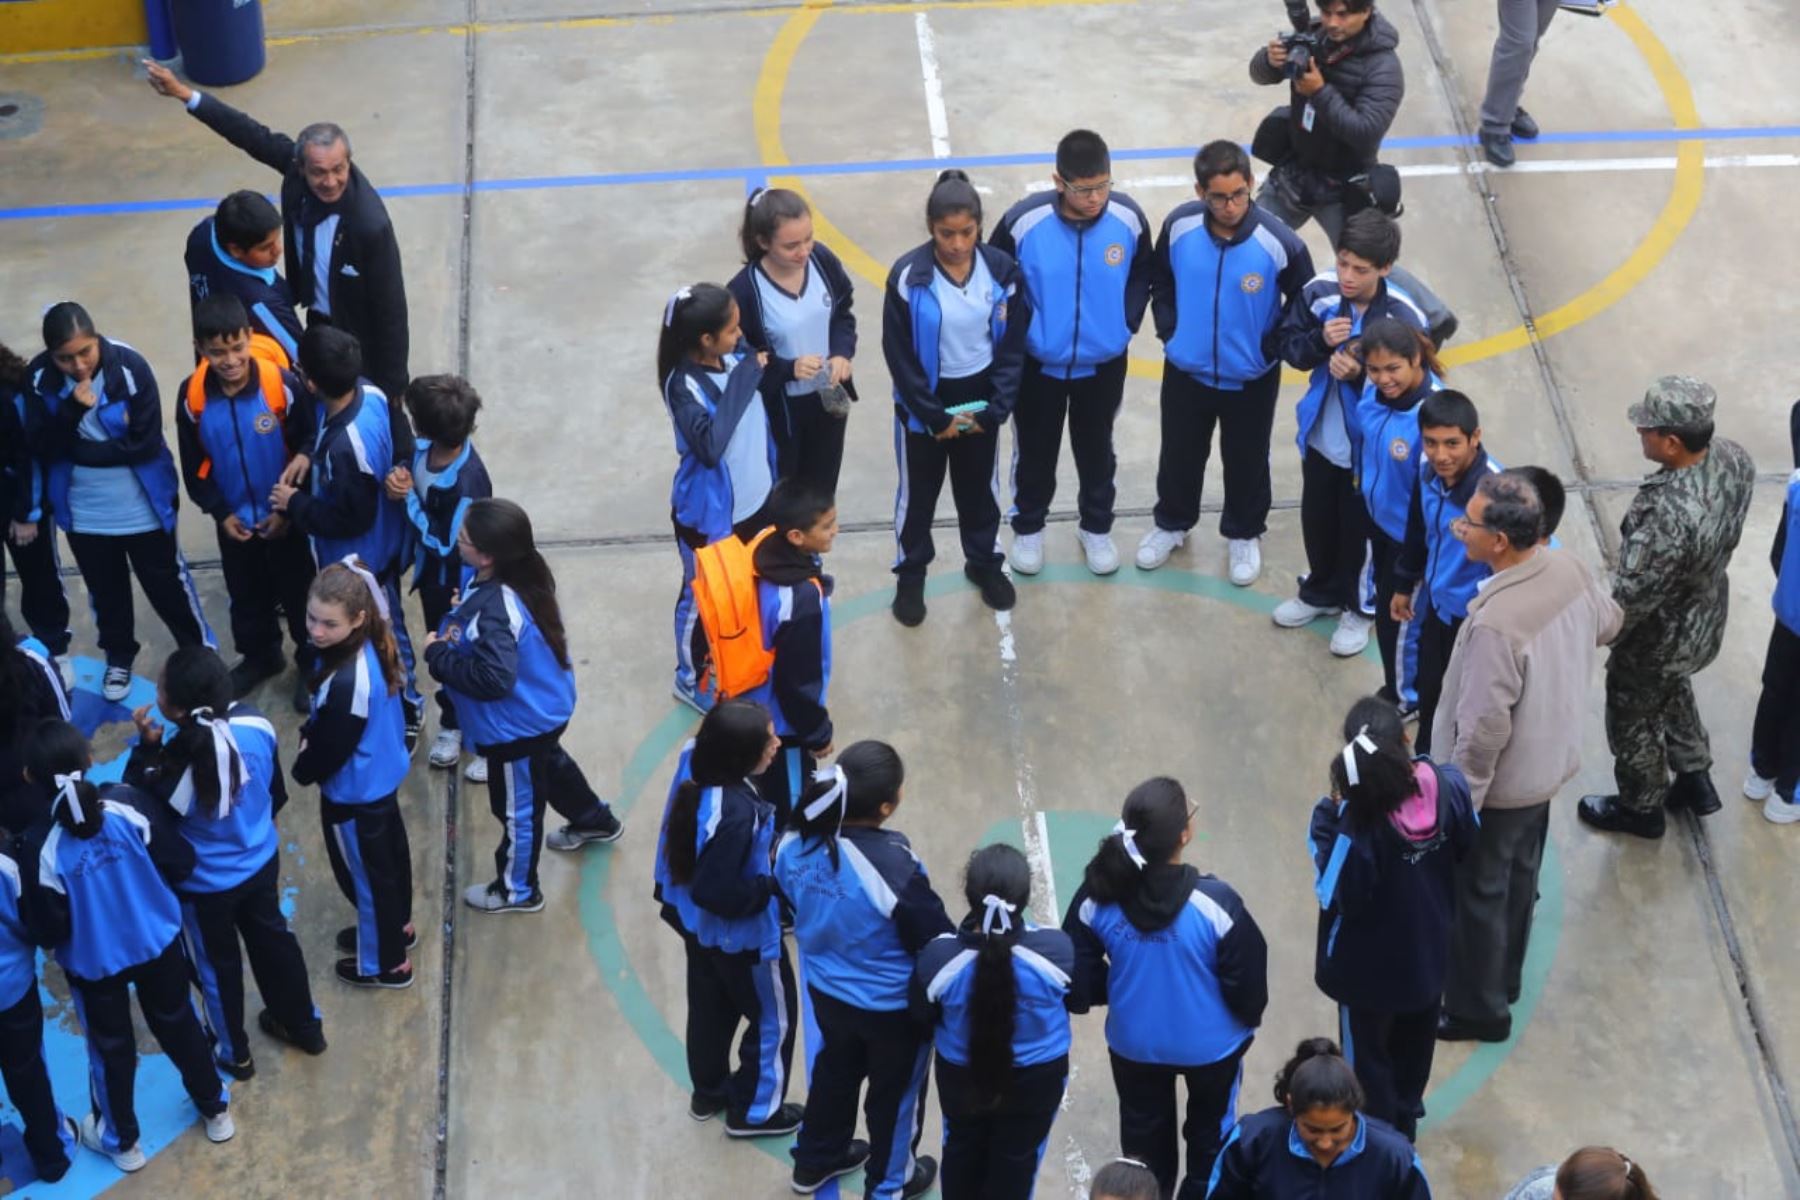 Al menos 360,000 escolares de la región Arequipa participarán, el próximo 12 de junio, en el simulacro de sismo escolar por el Día de la Solidaridad, el cual estaba programado para el 31 de mayo pasado, pero fue postergado por acciones de protesta en la zona. ANDINA/Prensa Presidencia